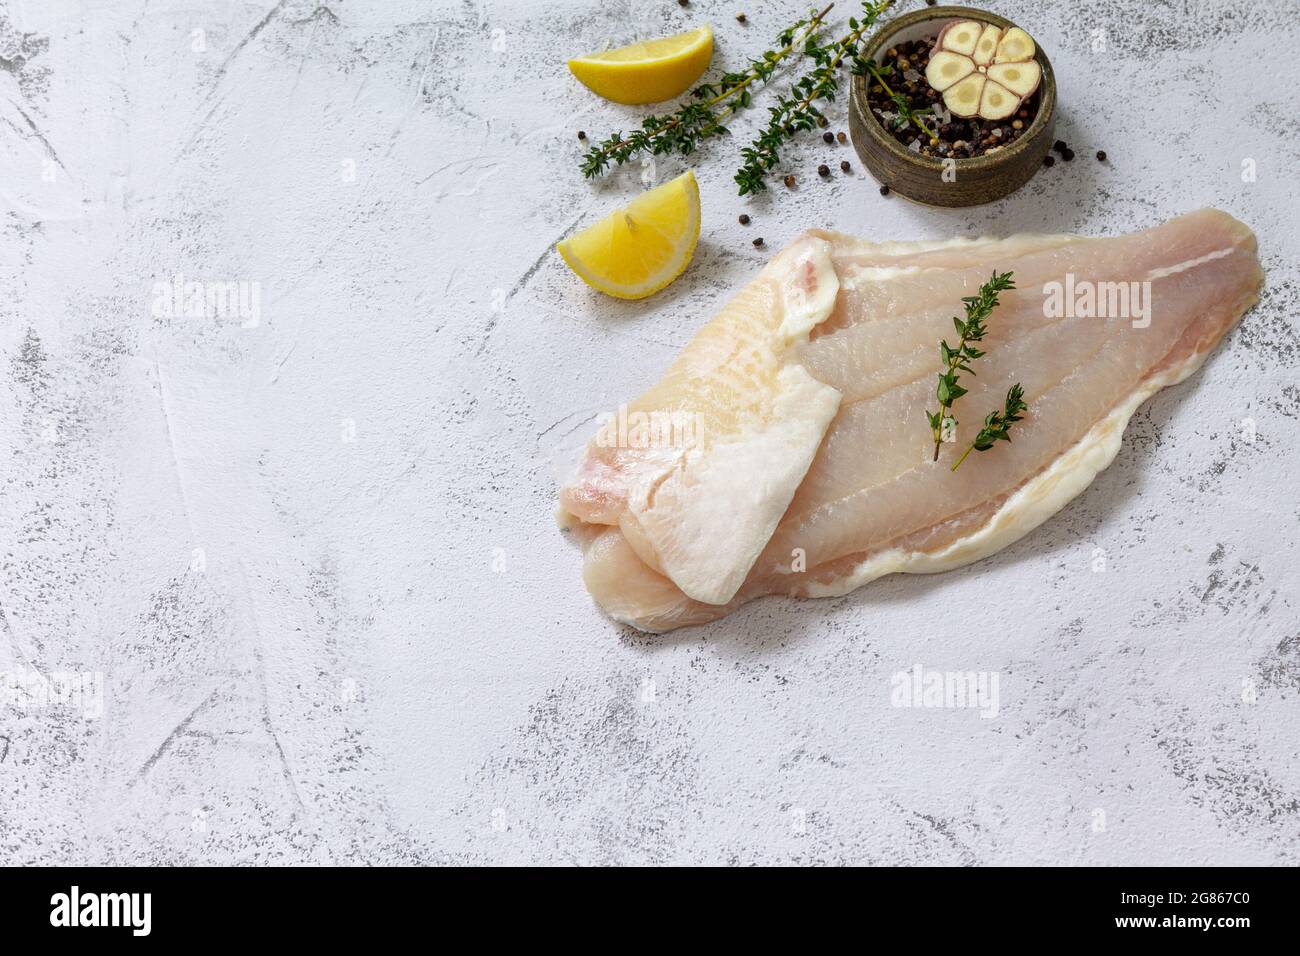 Meeresfrüchte, rohes weißes Fischfilet zum Kochen. Frisches Filet Pangasius  mit Gewürzen, Zitrone und Thymian auf steinernem Hintergrund. Speicherplatz  kopieren Stockfotografie - Alamy